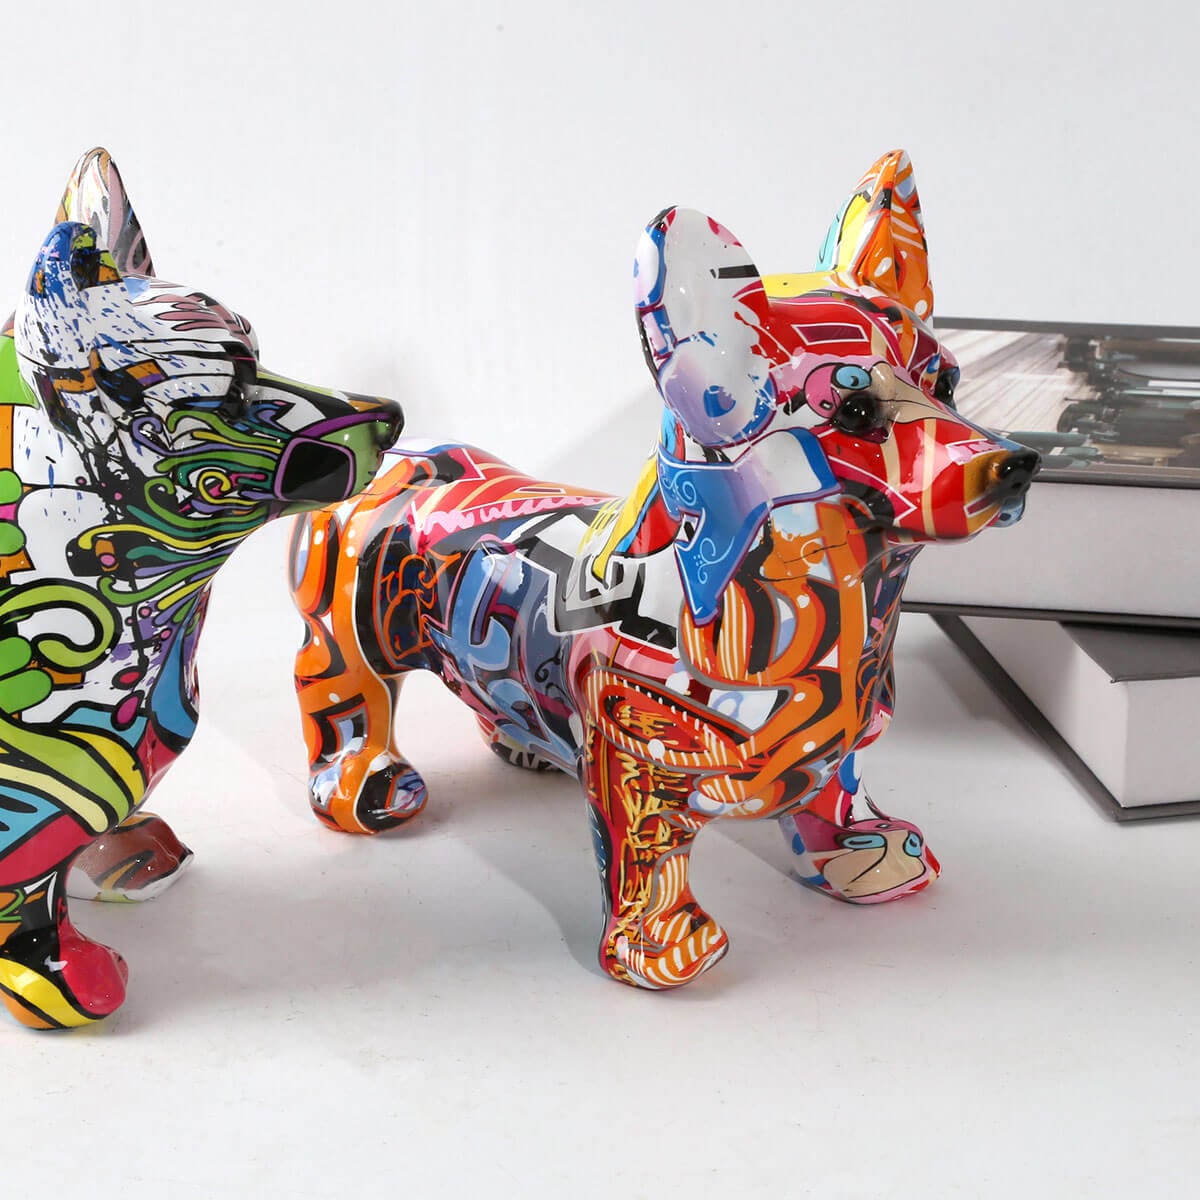 Corgi Dog Statue Colorful Graffiti Art Escultura